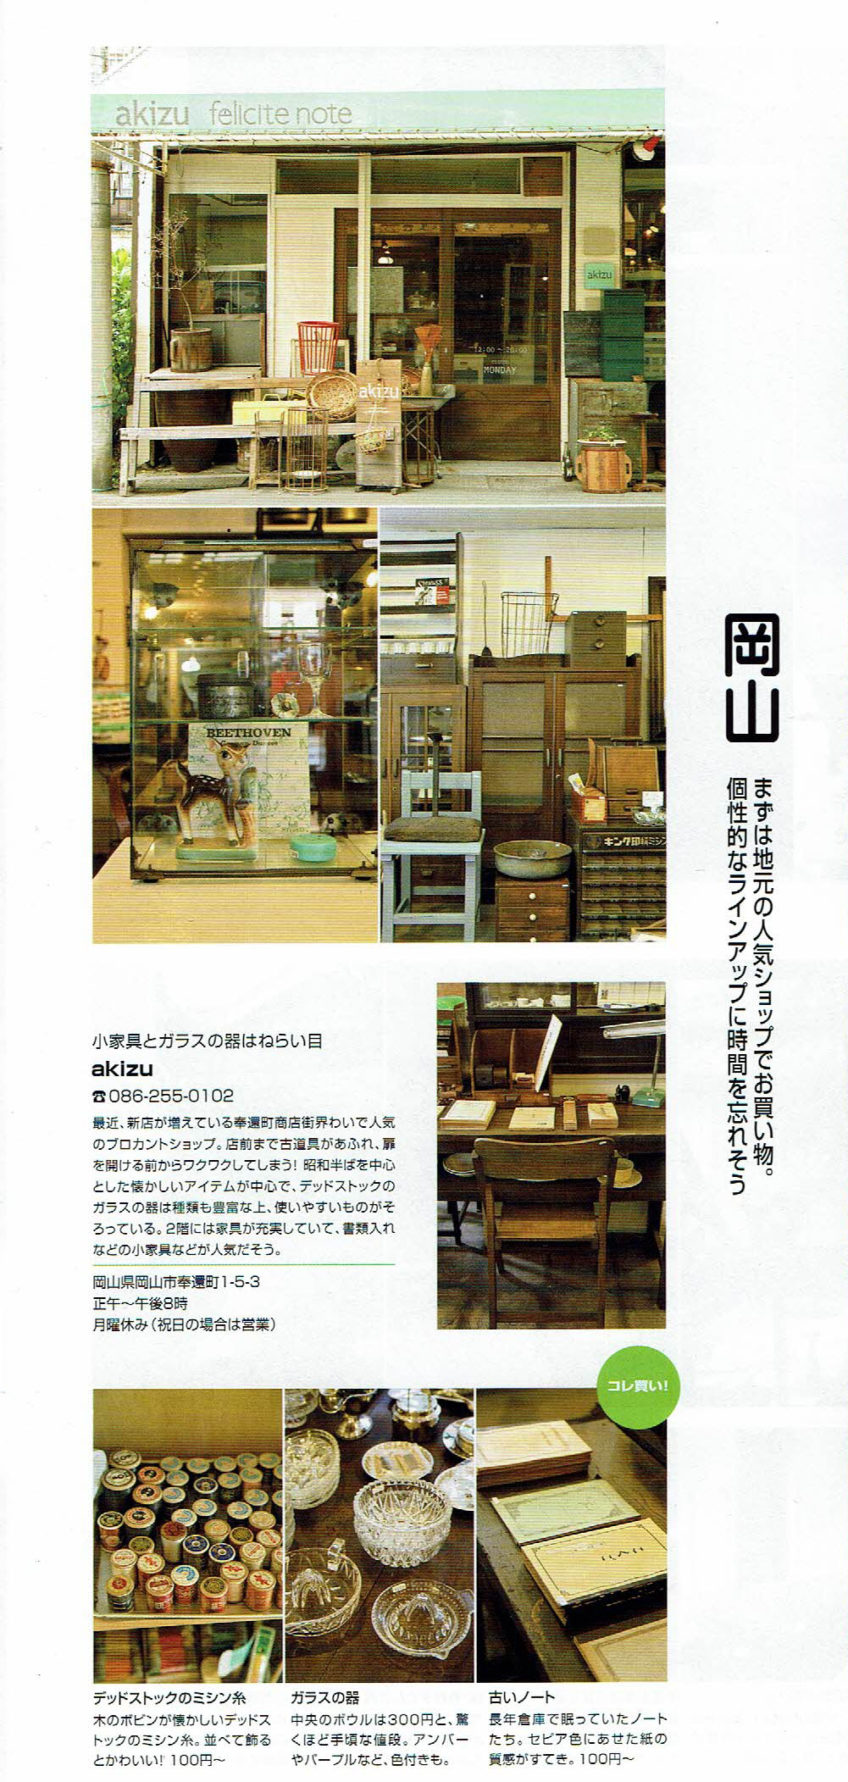 2008年9月1日-月刊サヴィ 2008 SEPTEMBER-akizu